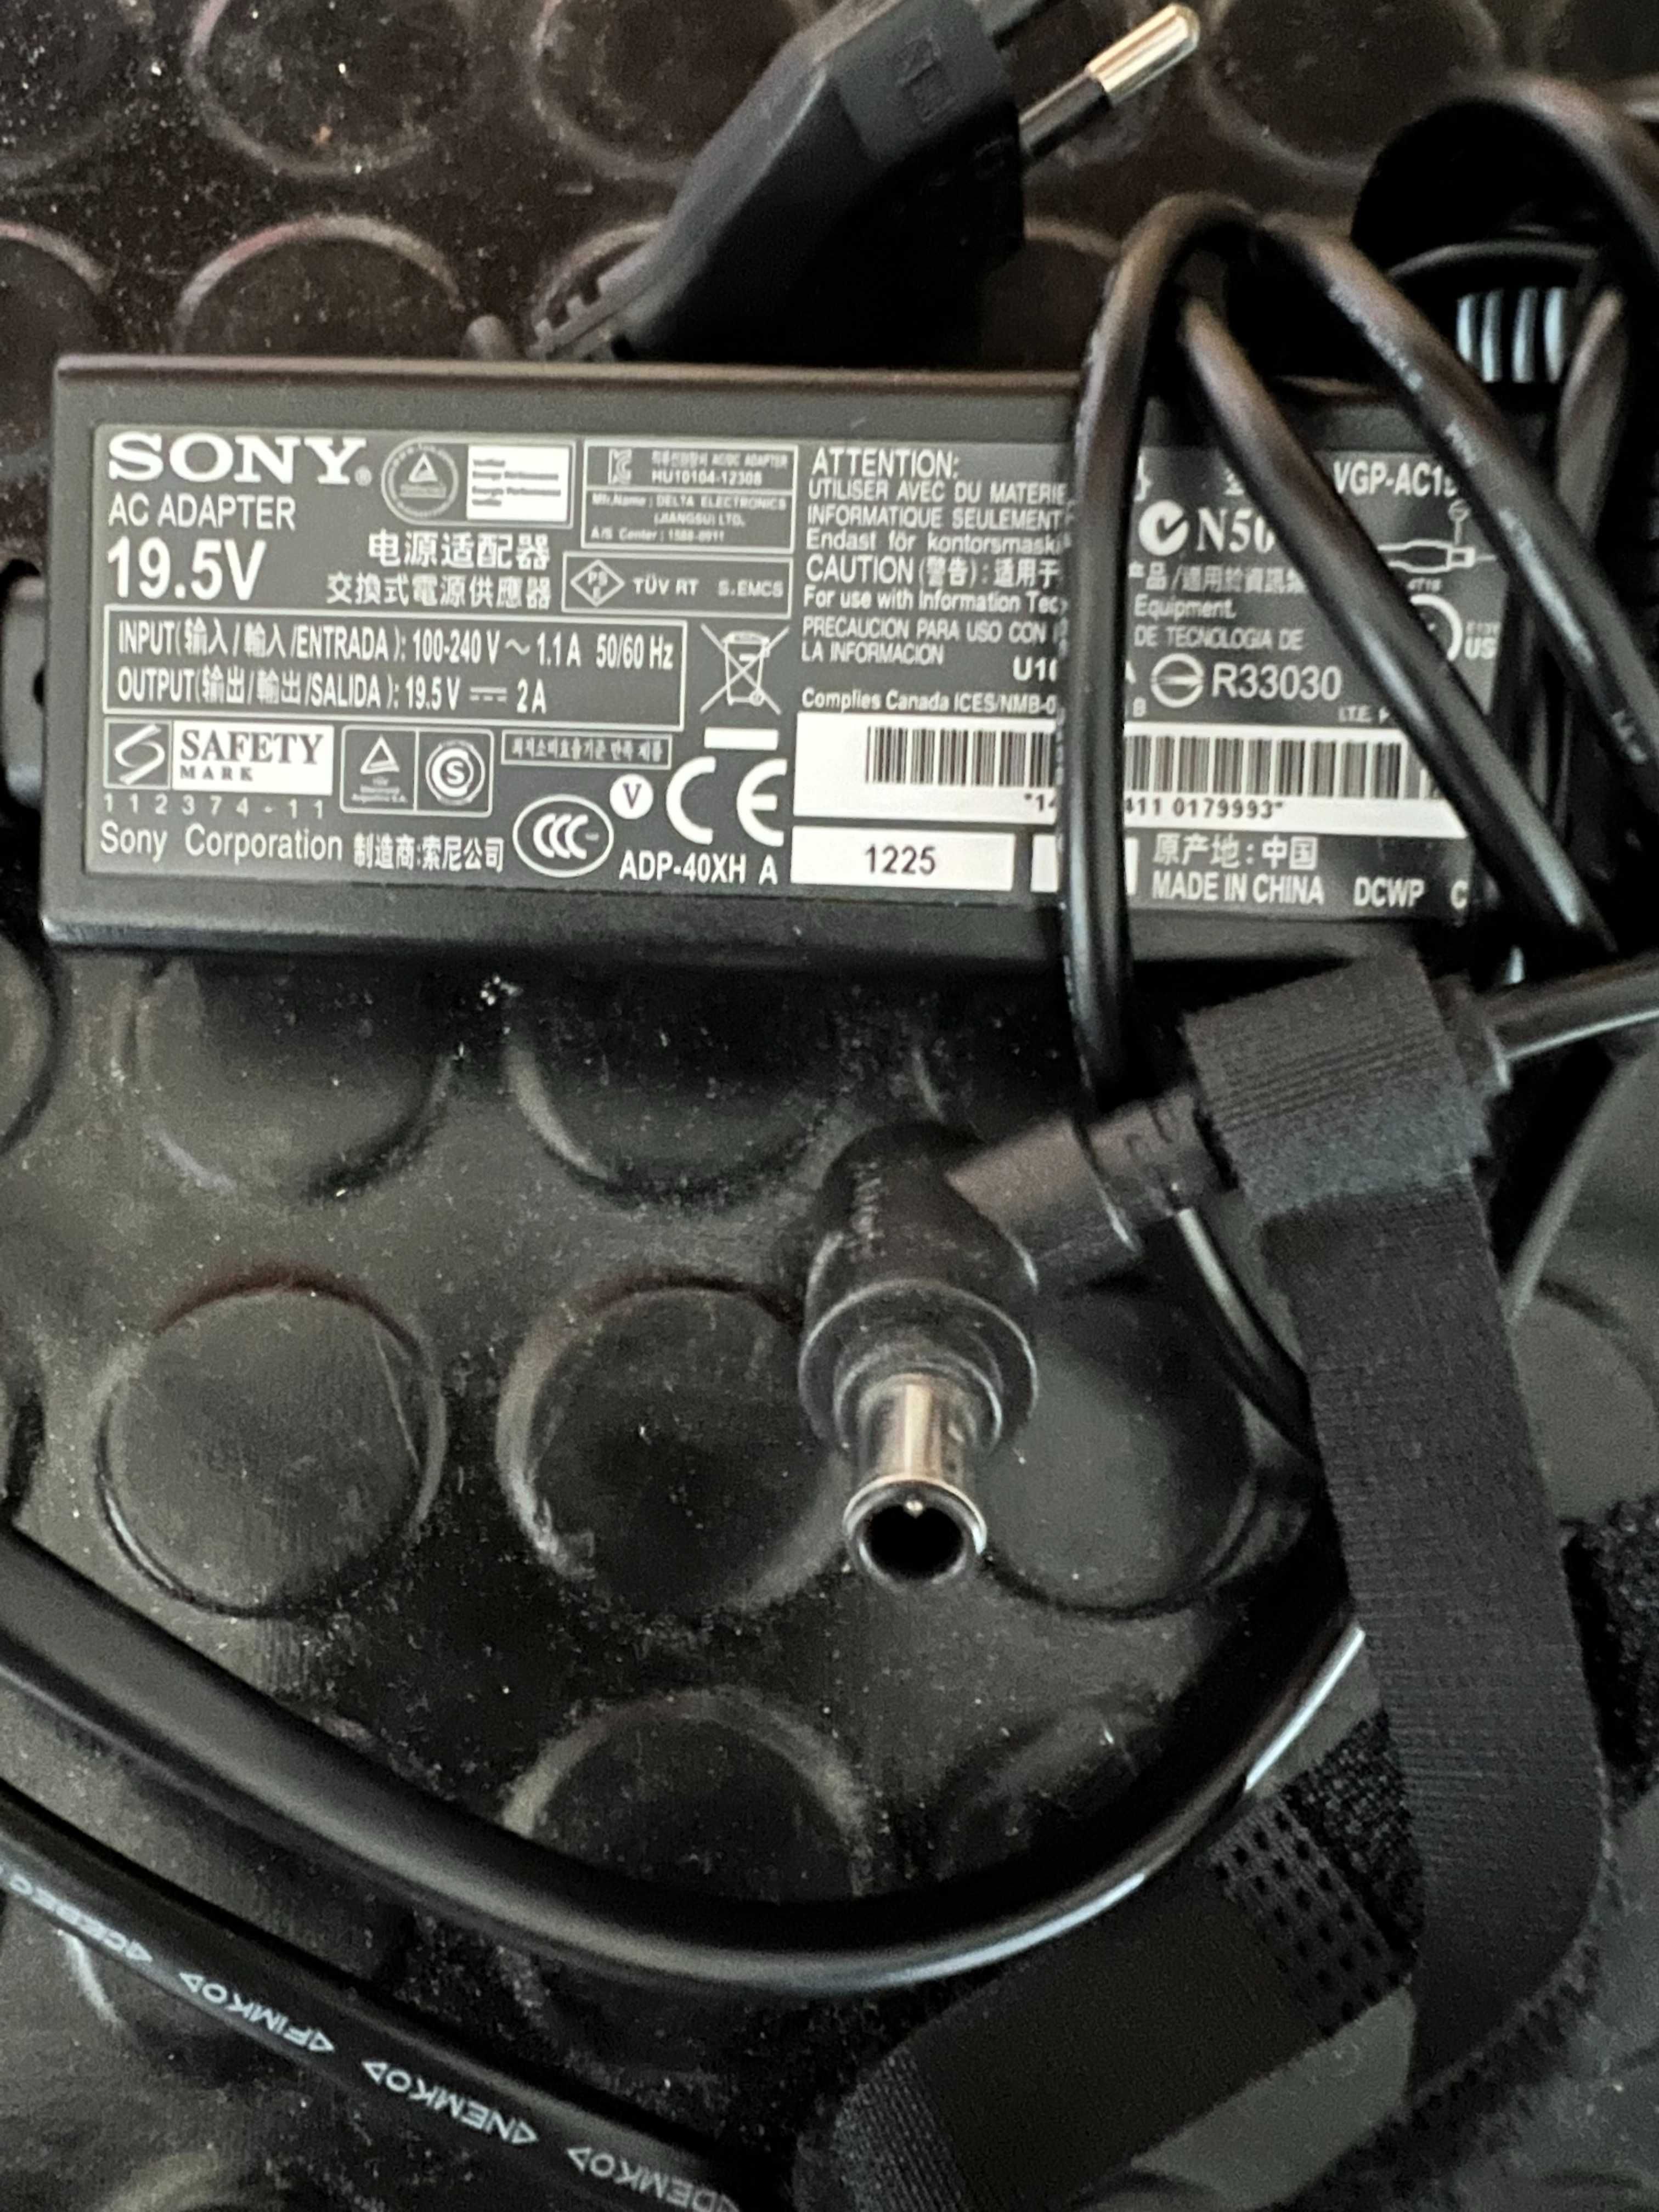 Adaptador Ac/Dc para Sony VGP-AC19V57 e Alimentador Camera HI8 AC-L10B